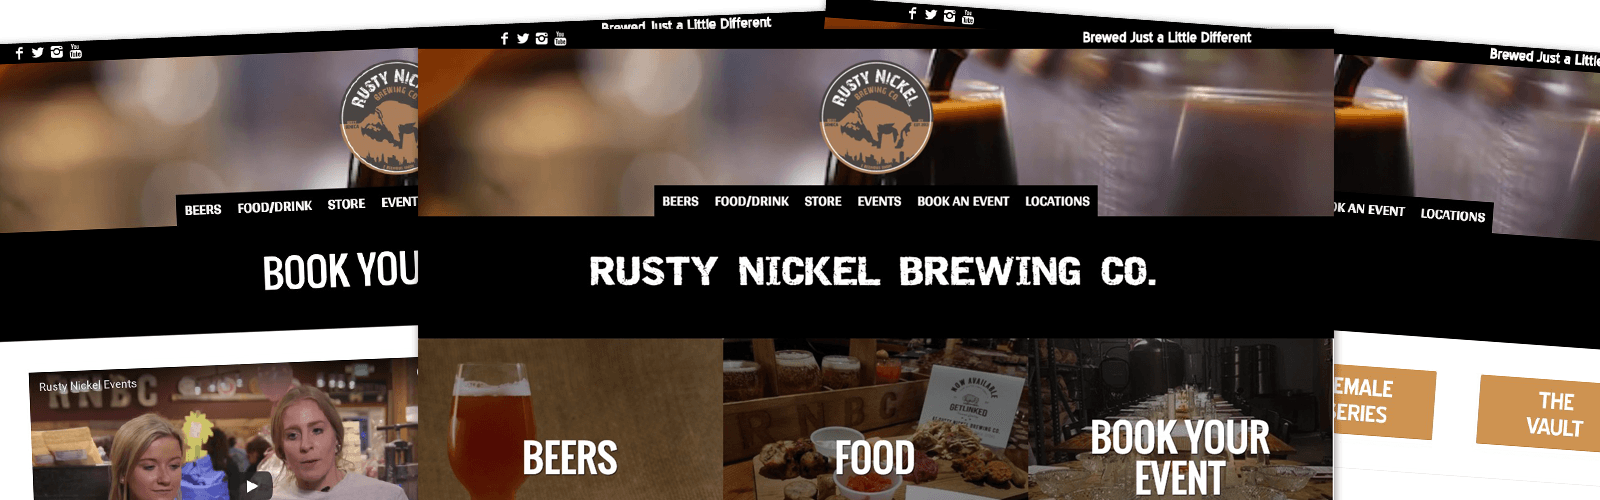 Rusty Nickel Brewing